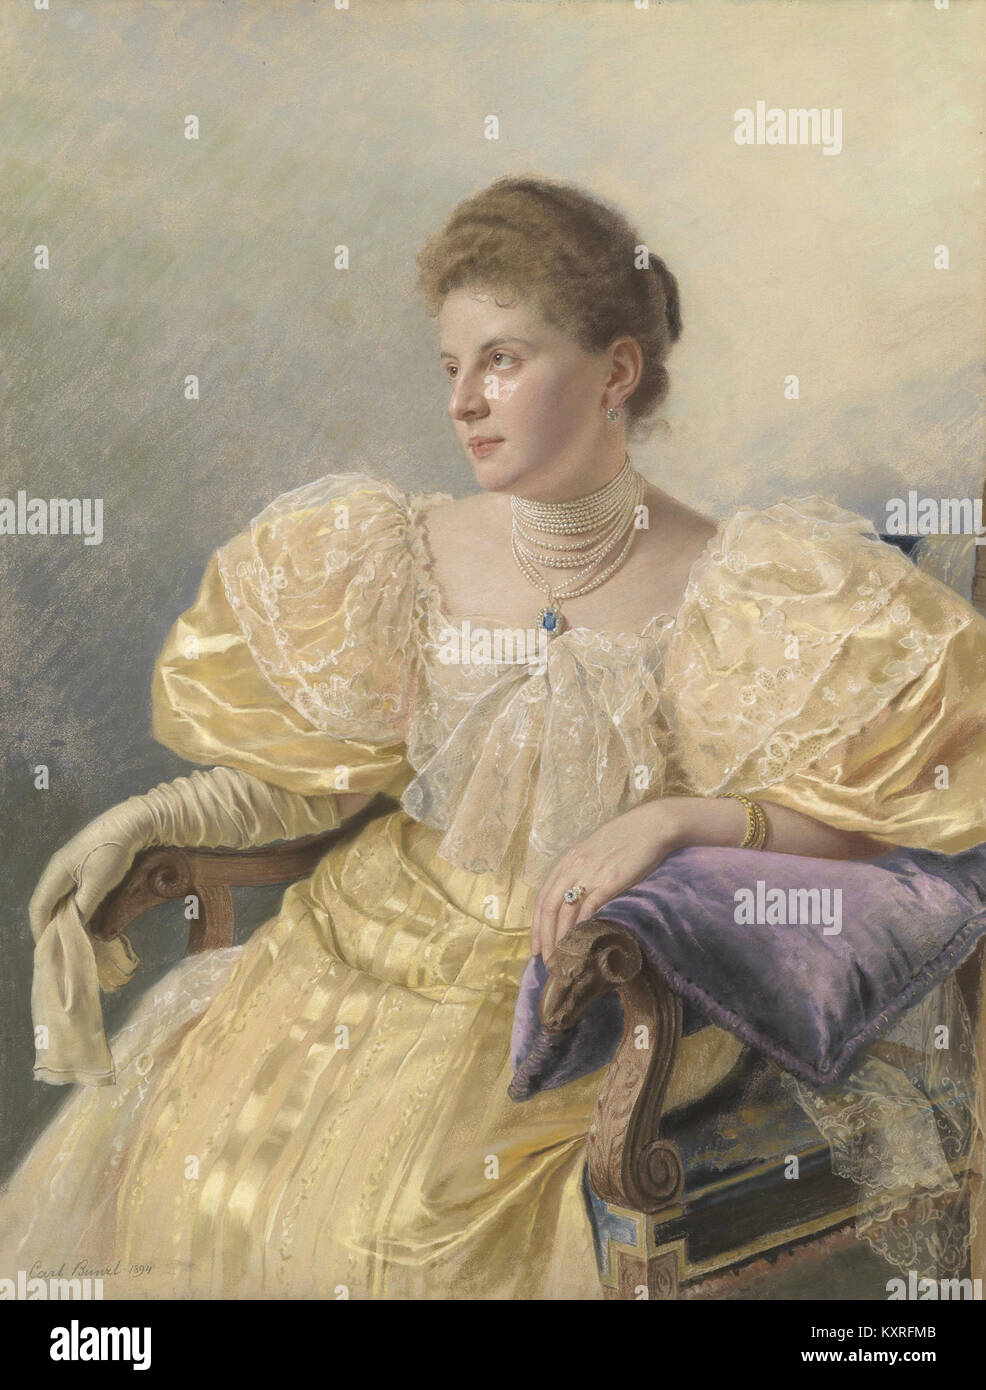 Carl Bunzl Porträt einer eleganten Dame in gelbem Kleid 1894 Stock Photo